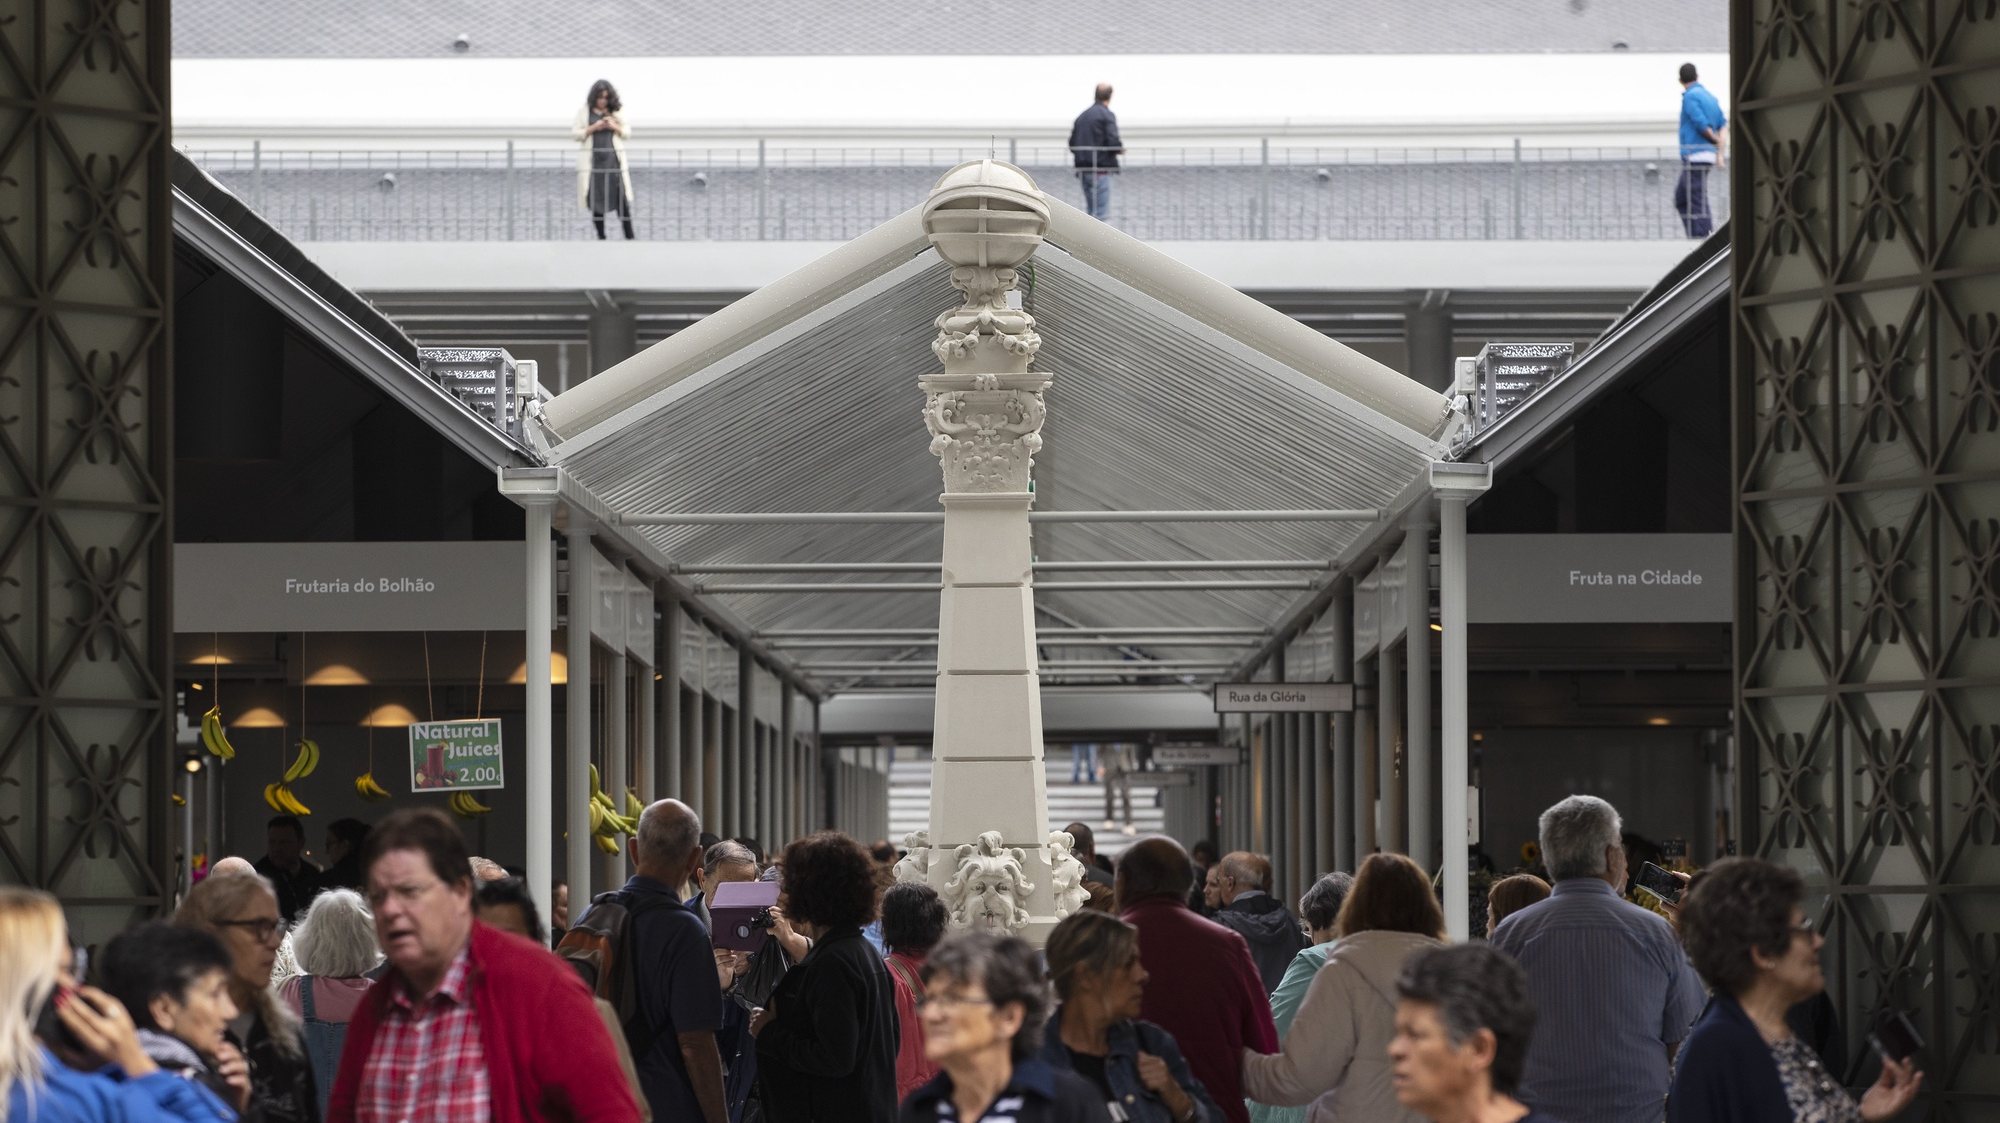 Abertura do Mercado do Bolhão depois de quatro anos de obras de requalificação, Porto, 15 de setembro de 2022.   JOSÉ COELHO/LUSA